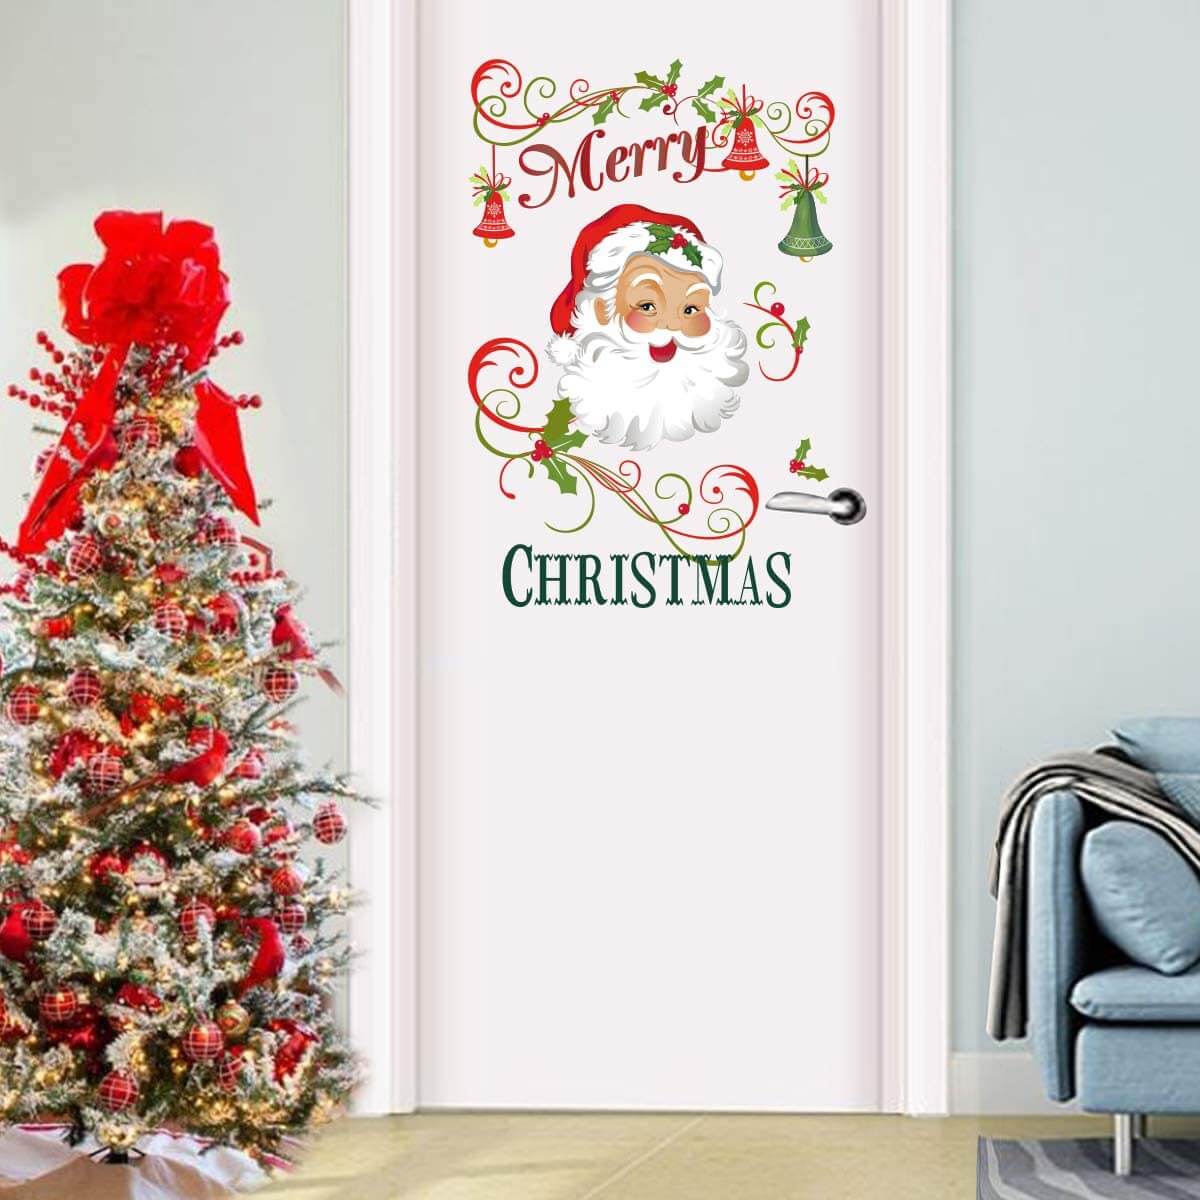 Trang trí cánh cửa phòng ngủ Giáng Sinh